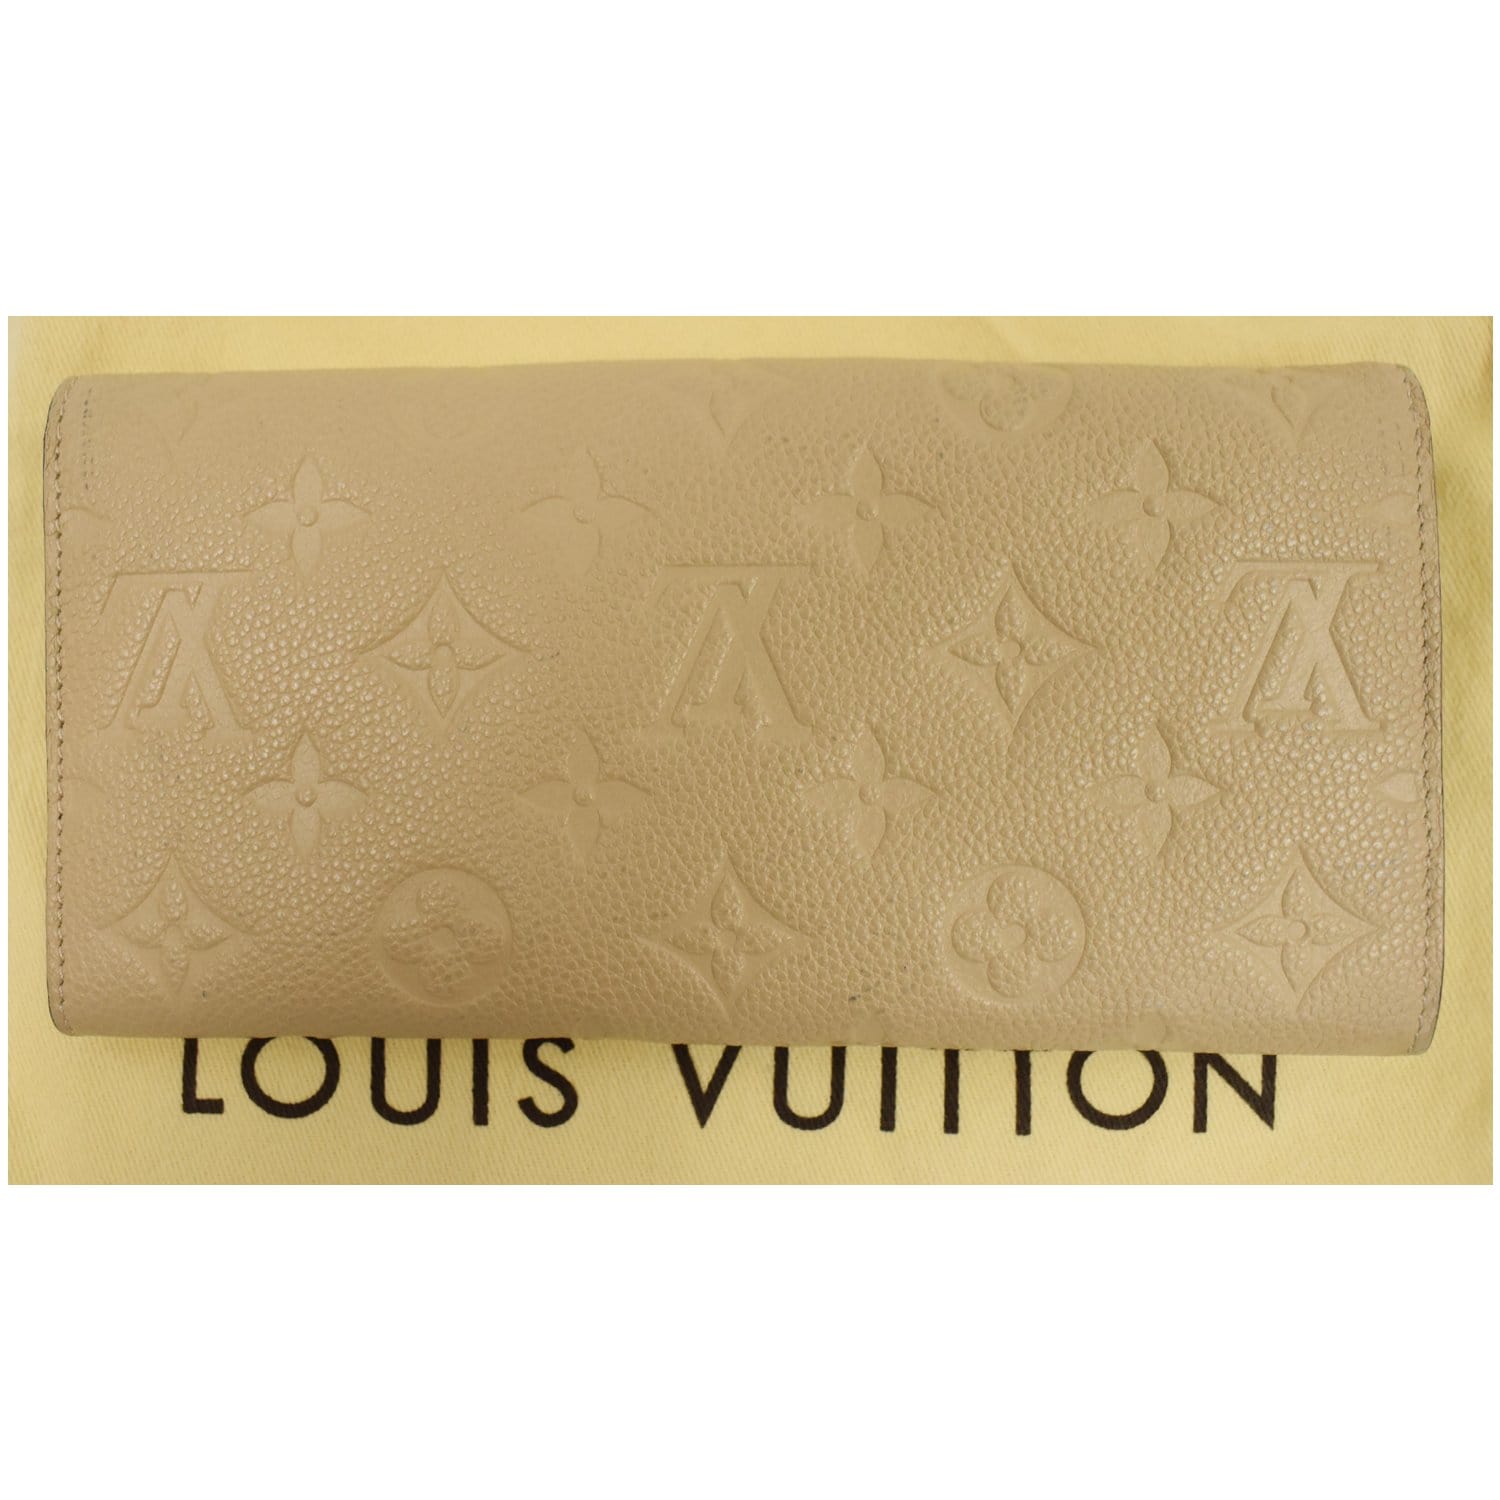 Replica Louis Vuitton M60735 Compact Curieuse Wallet Monogram Empreinte  Leather For Sale